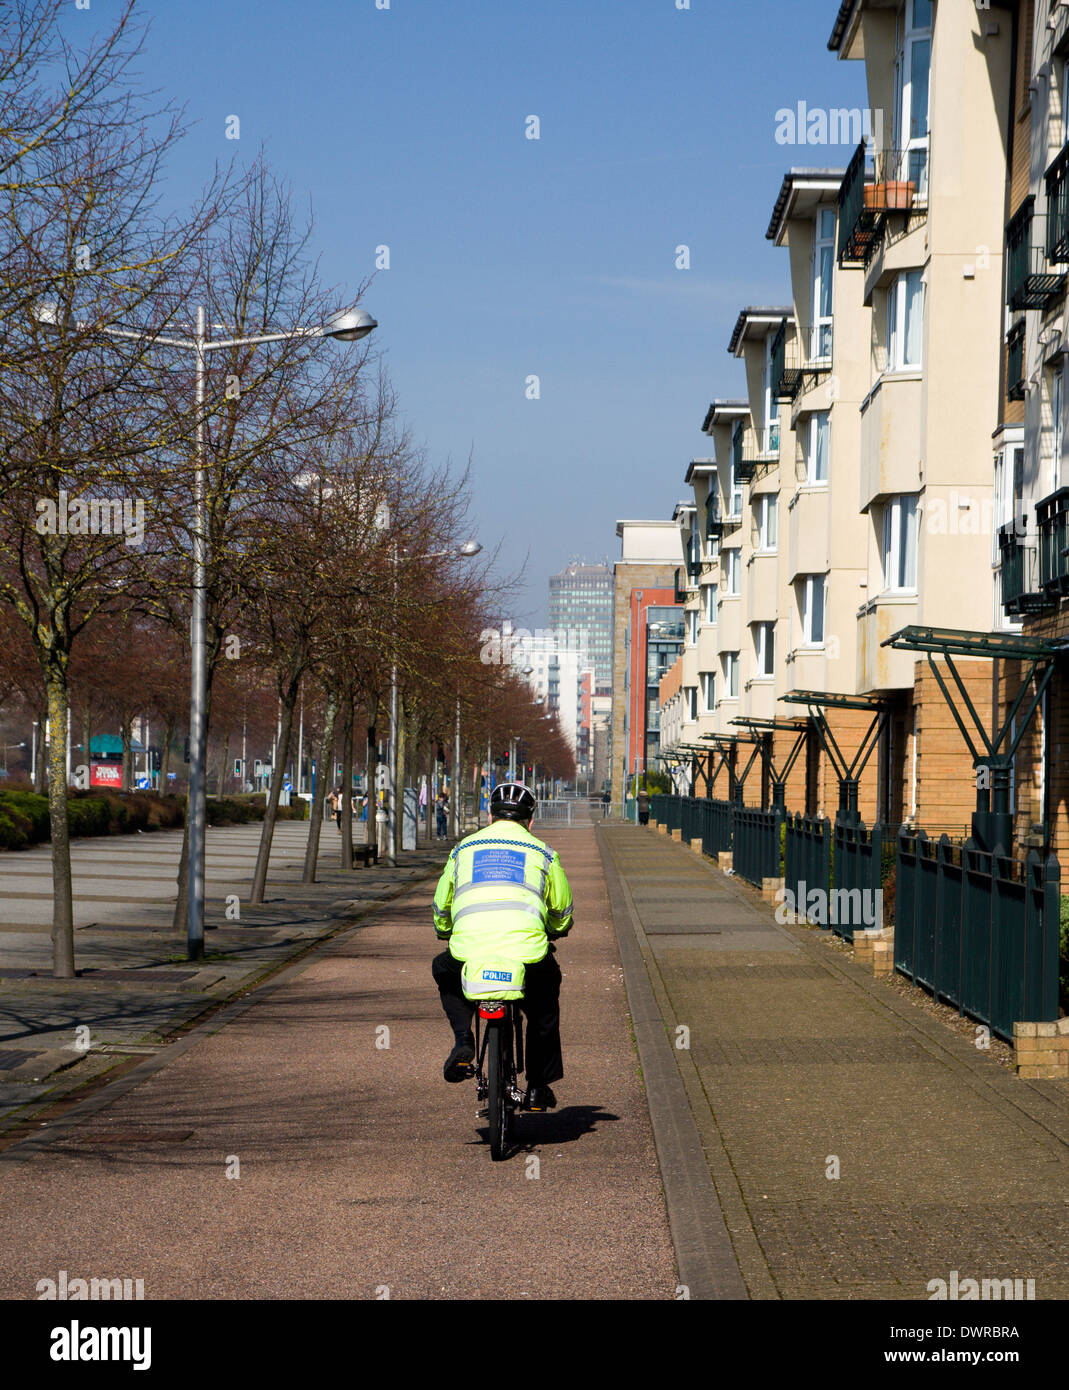 Agent de soutien communautaire de la Police à vélo, Avenue Lloyd George, la baie de Cardiff, Pays de Galles. Banque D'Images